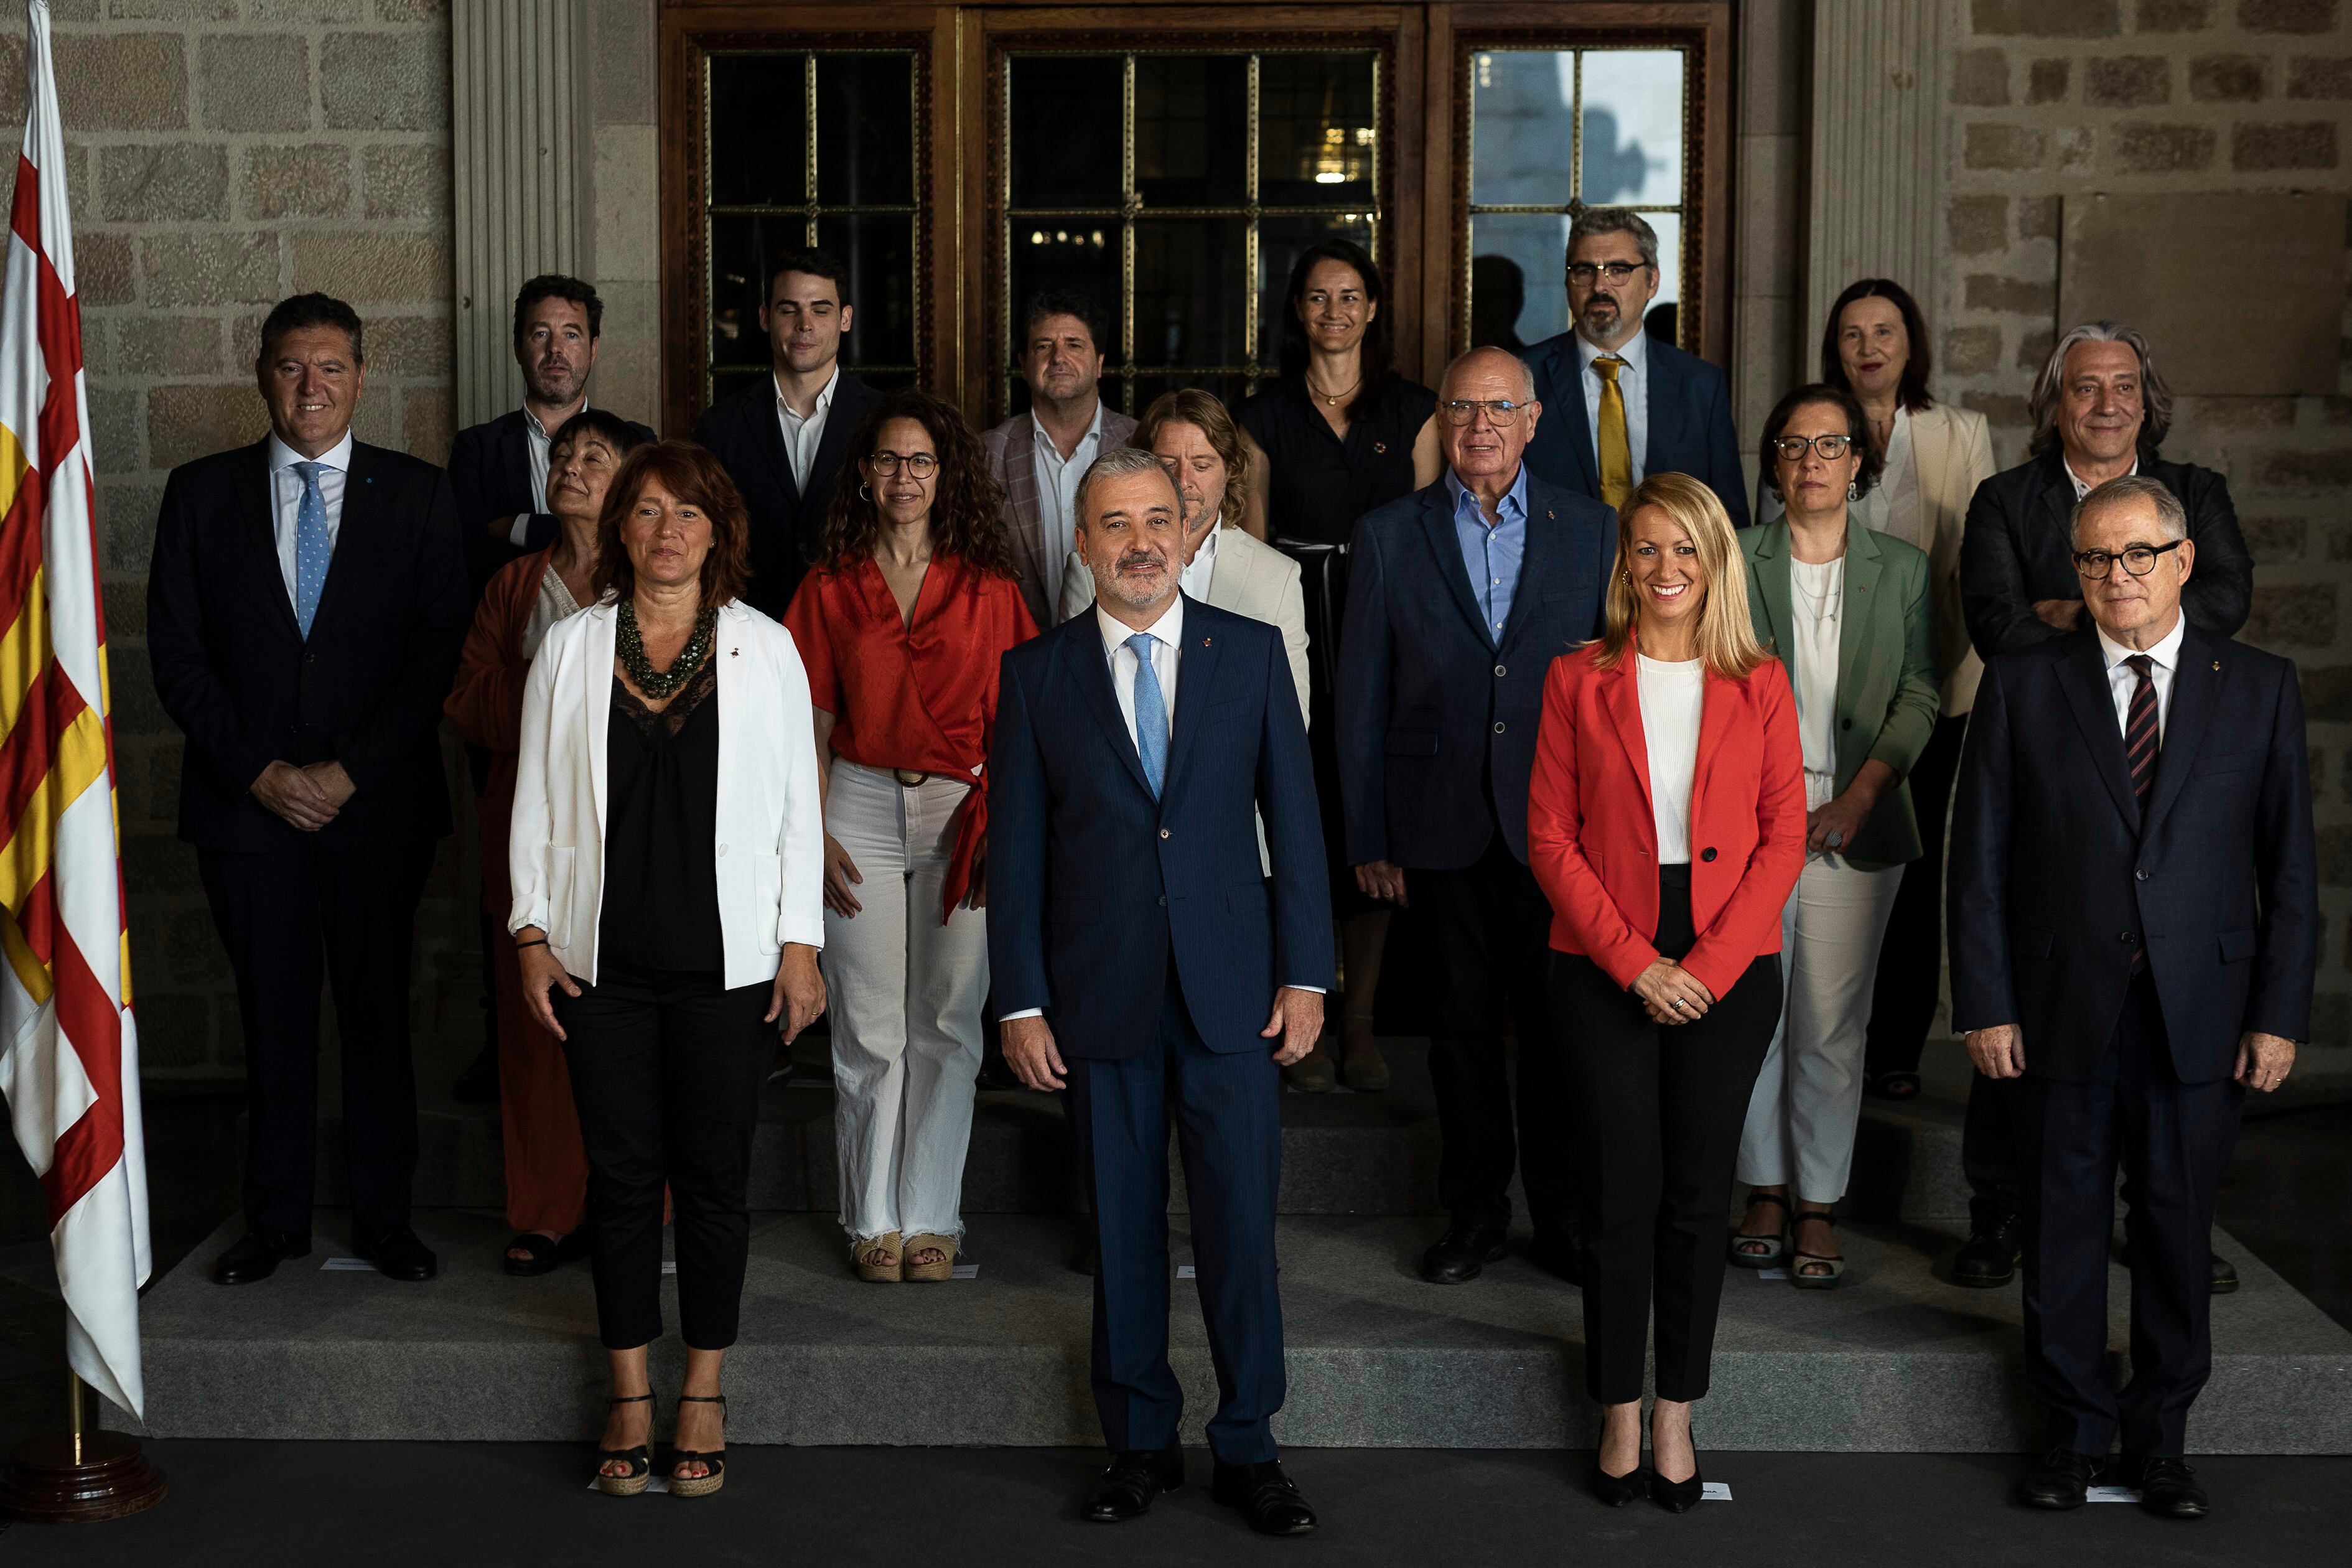 El alcalde de Barcelona, Jaume Collboni, rodeado de sus tenientes de alcaldía, concejales y comisionados, en la presentación de la estructura política de su gobierno.